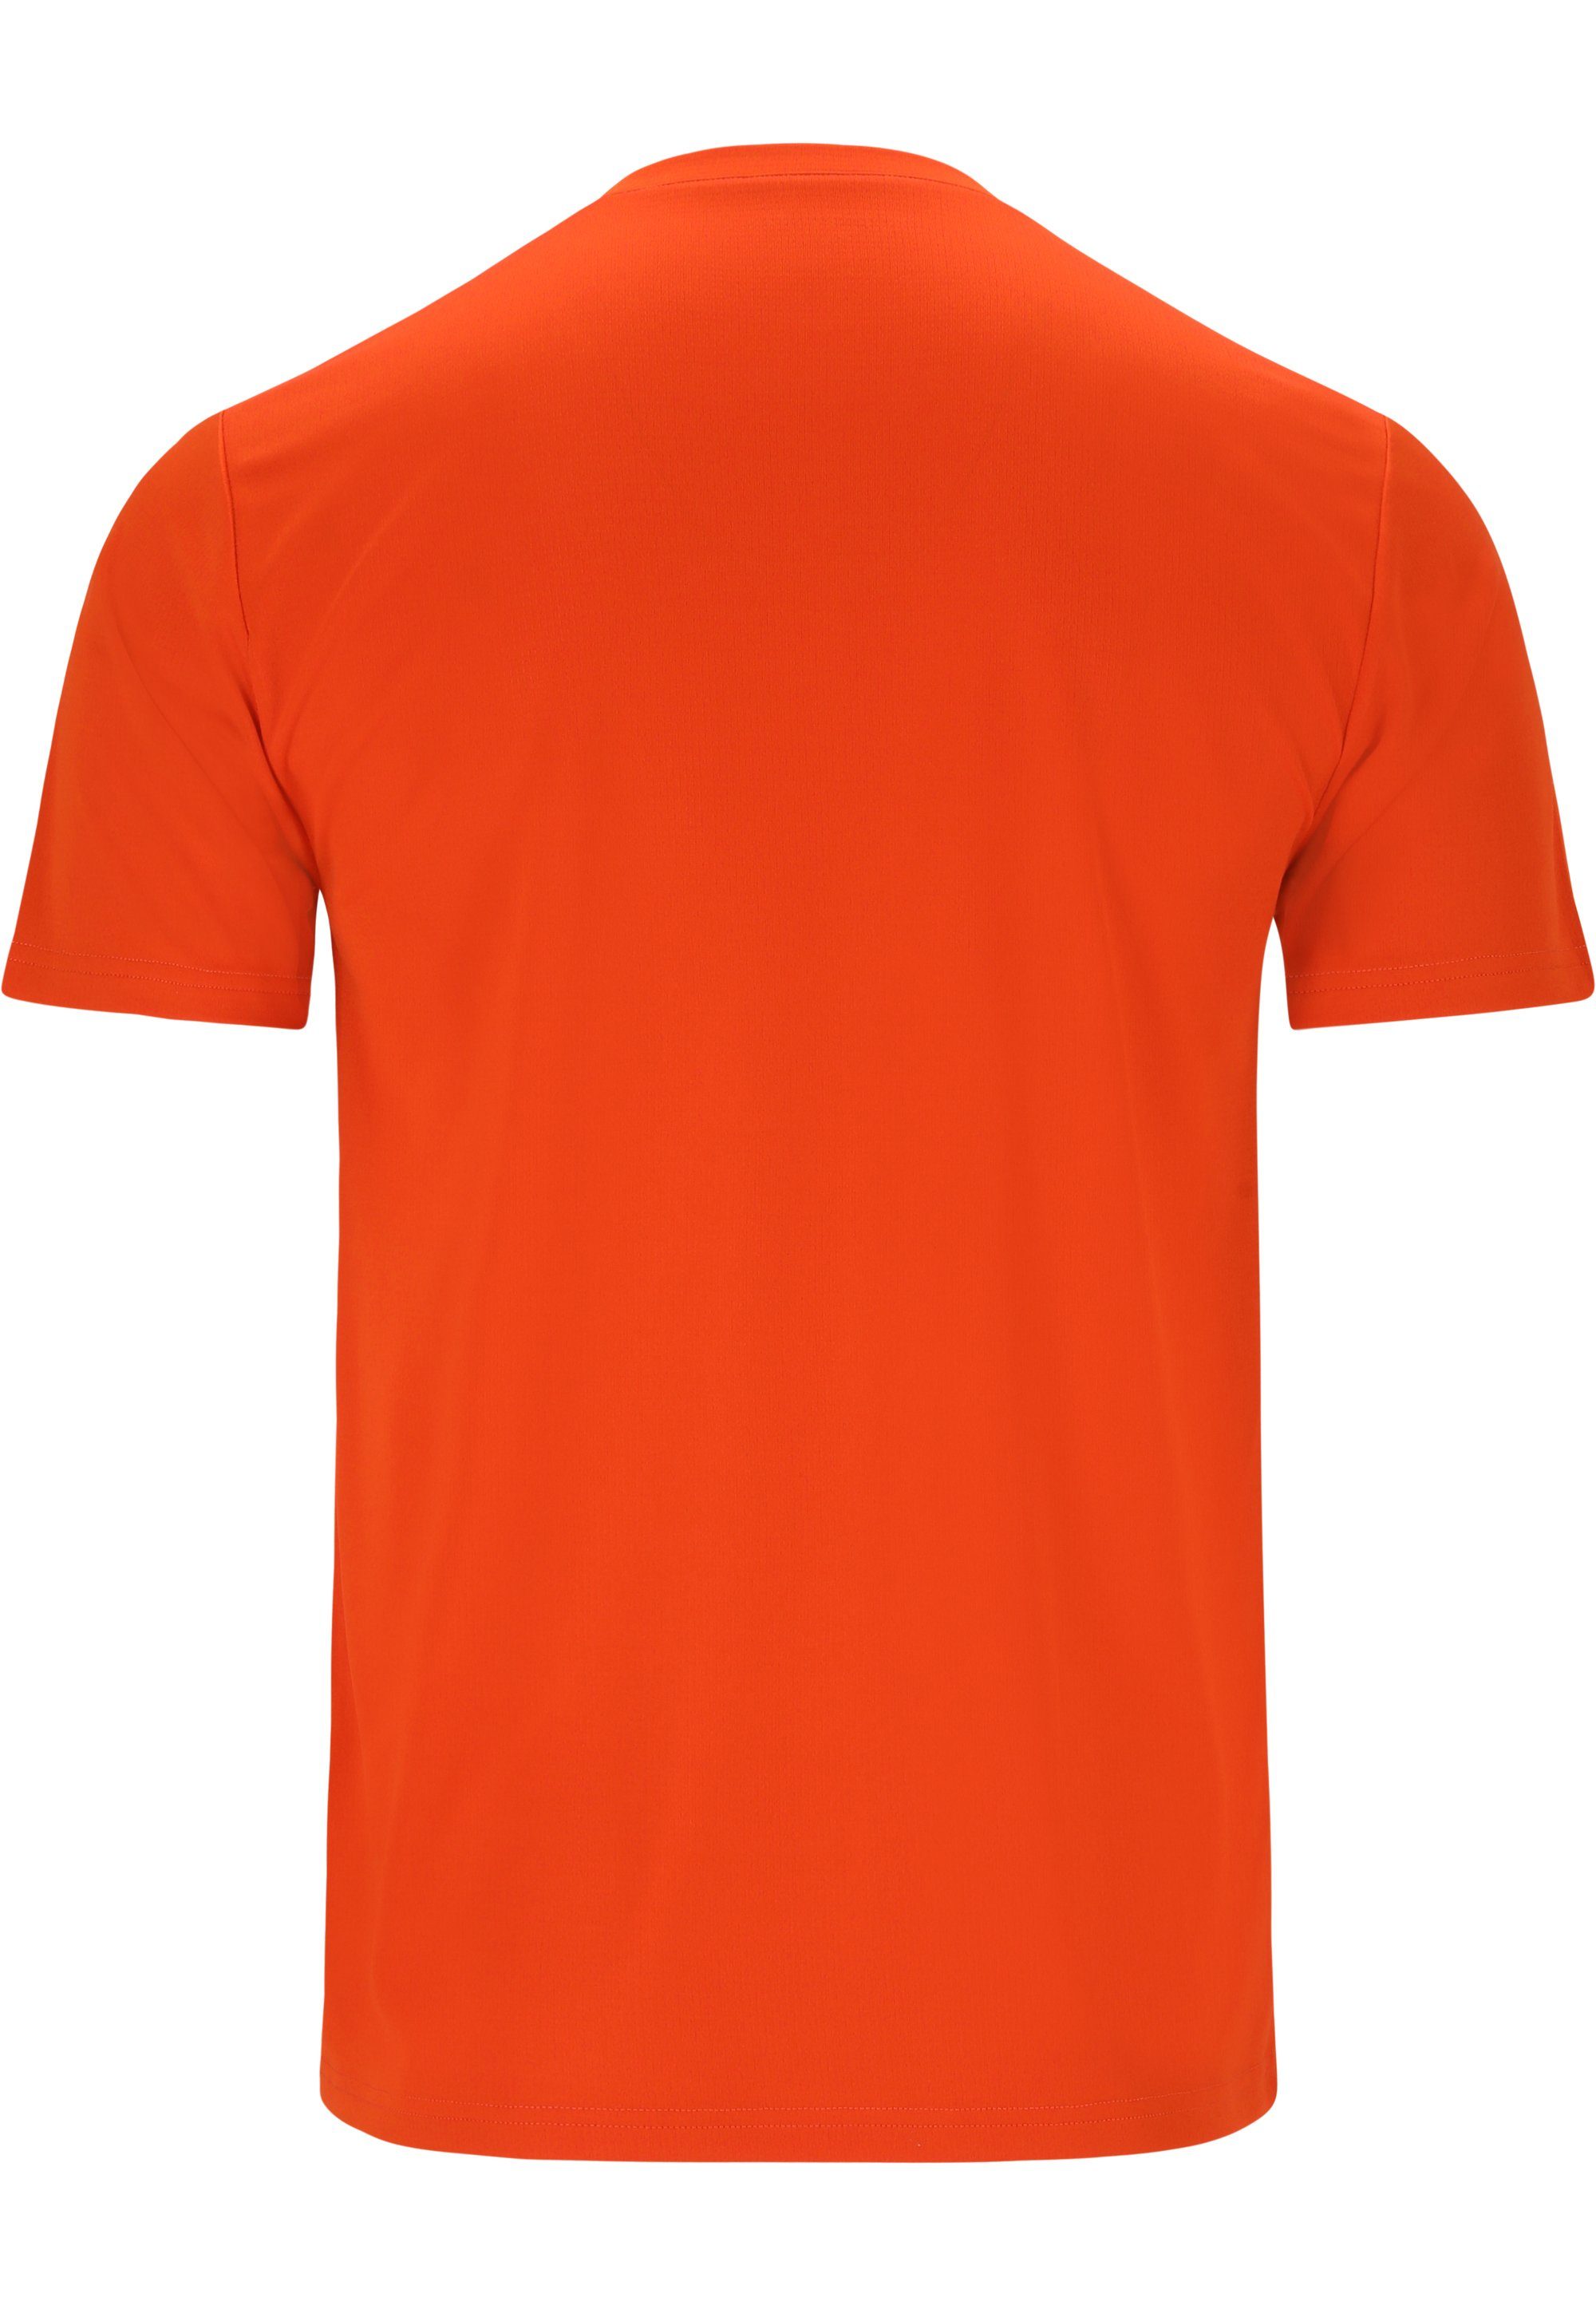 DRY-Technologie (1-tlg) ENDURANCE mit praktischer orange Funktionsshirt VERNON QUICK